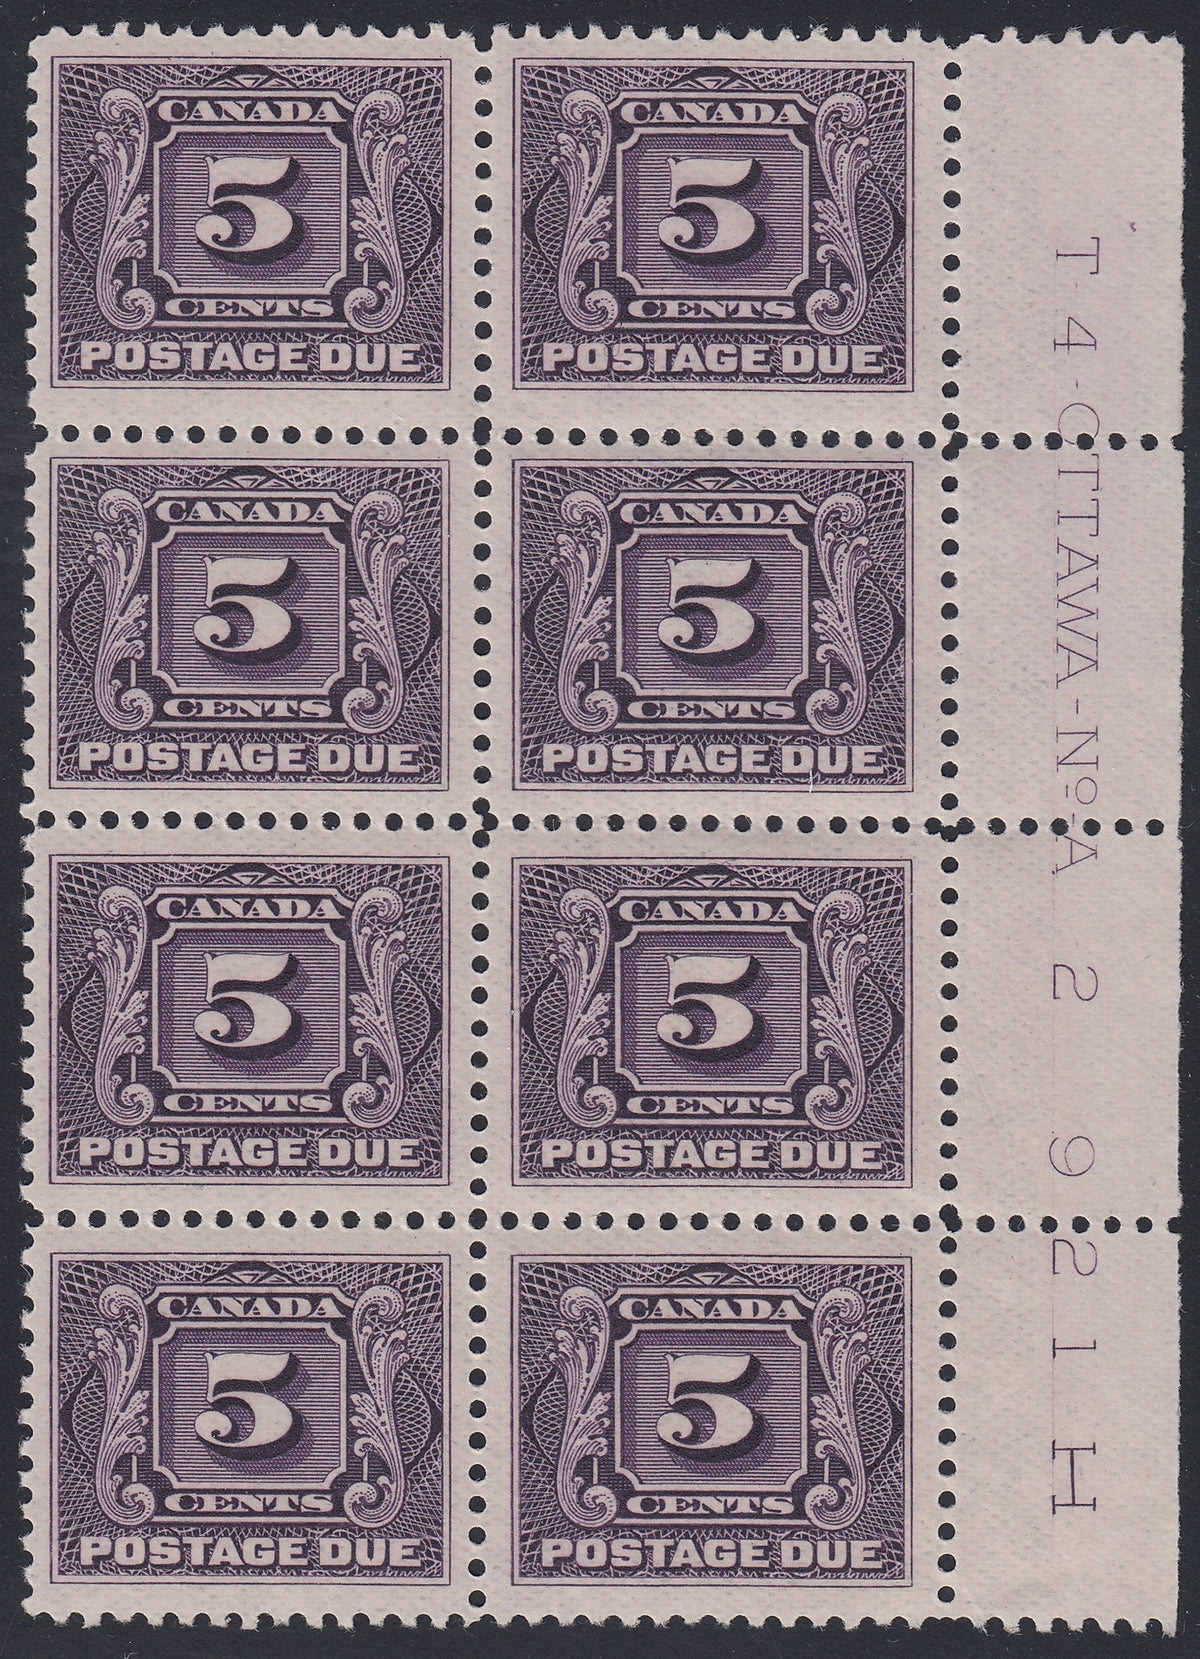 0120CA1805 - Canada J4a - Mint Plate Block of 8